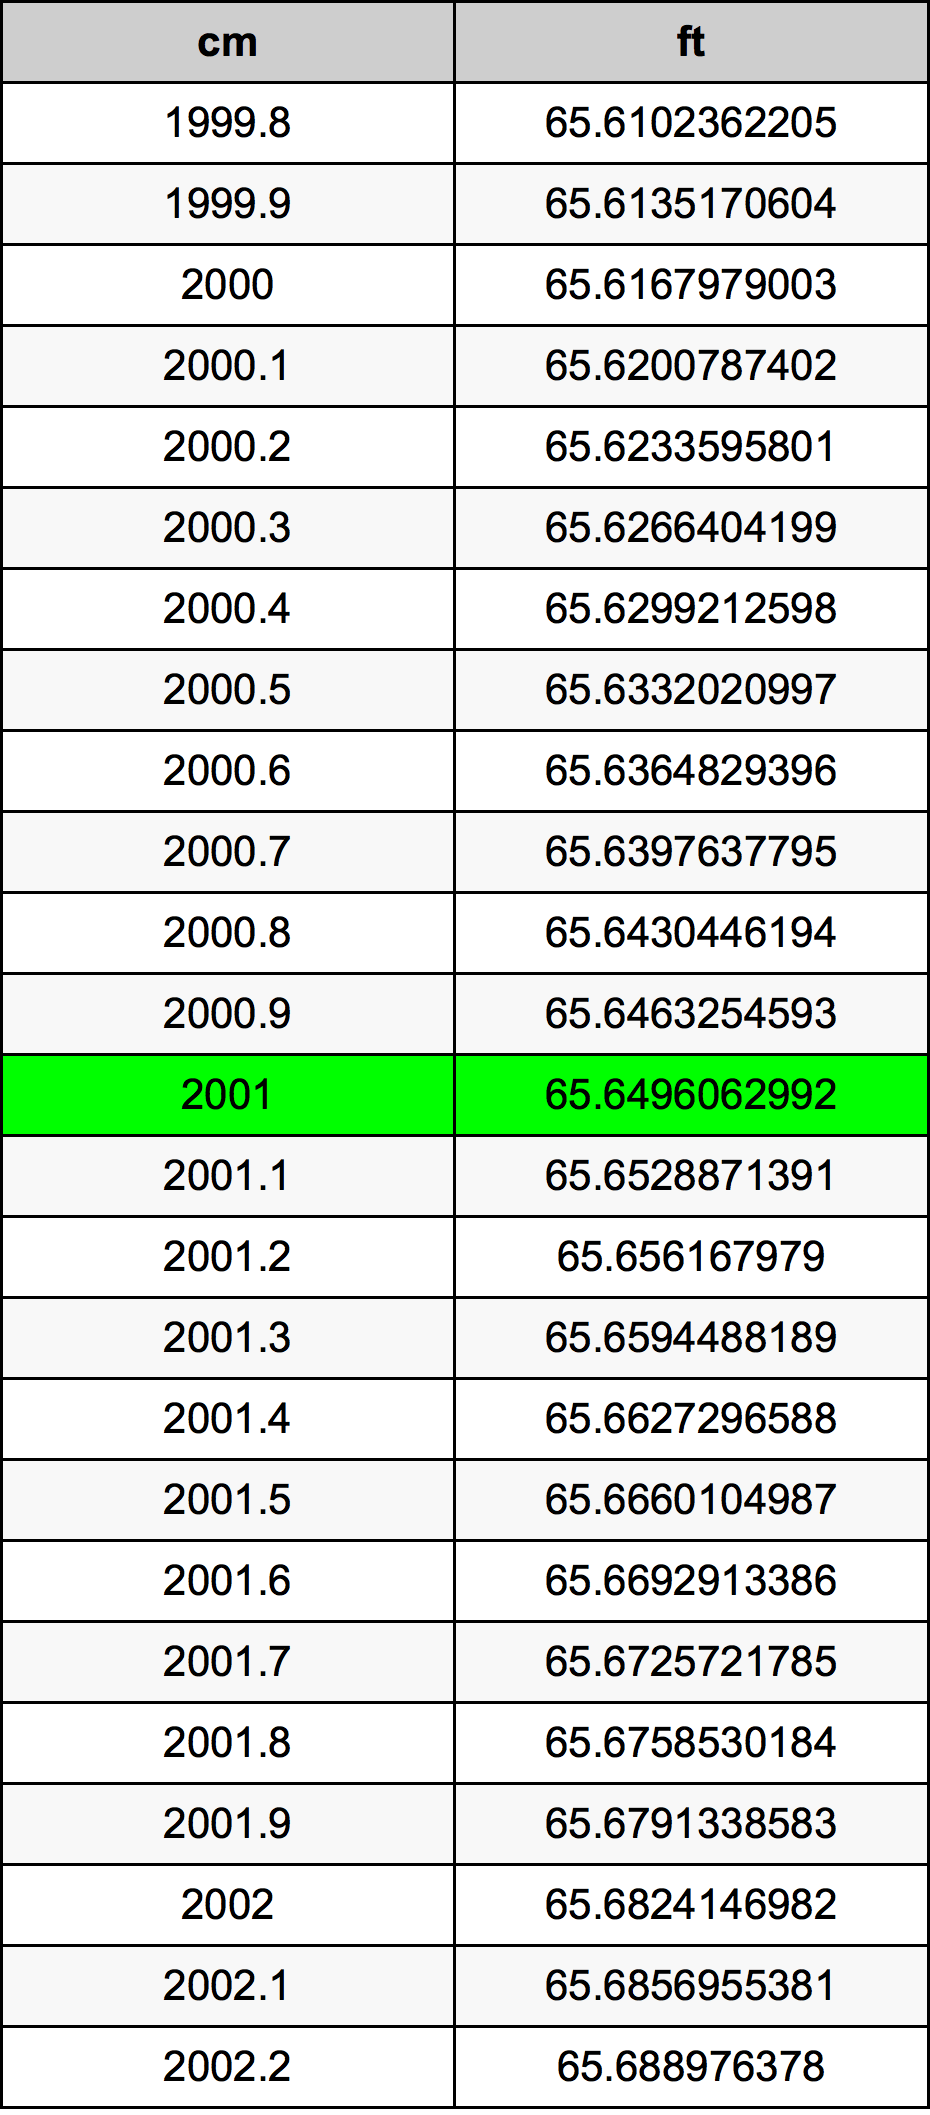 2001 Centimètre table de conversion